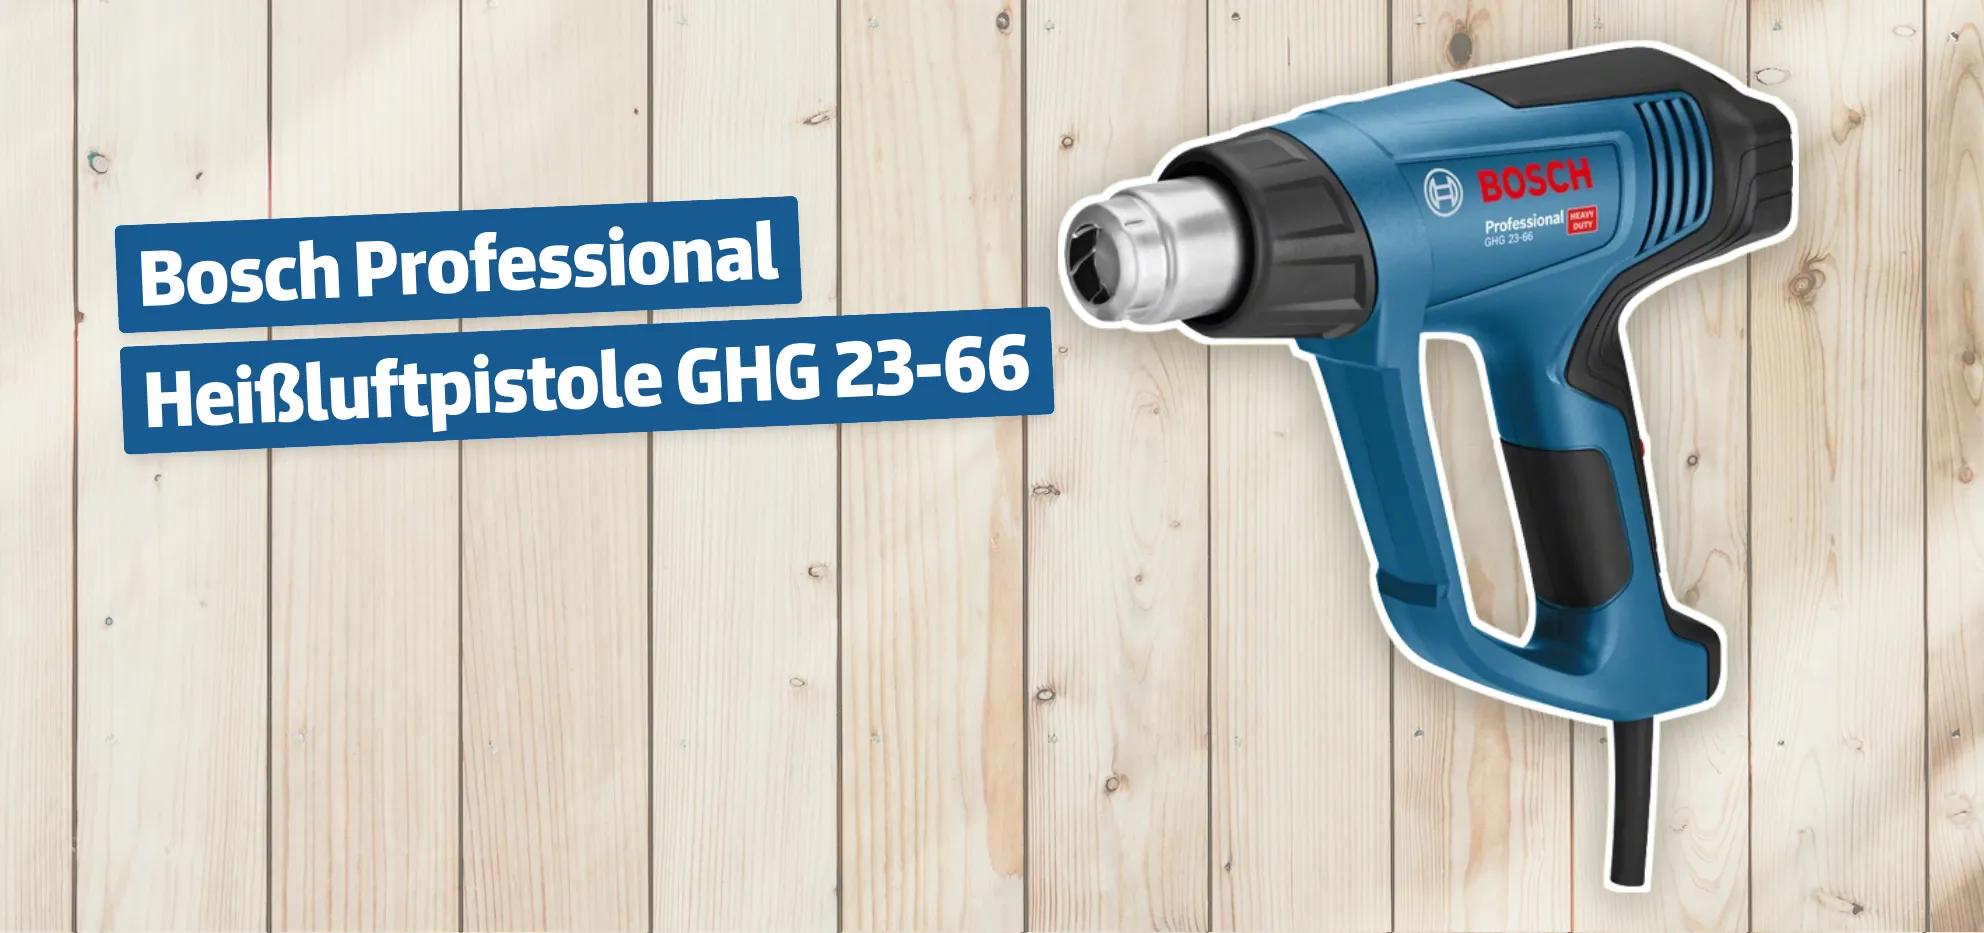 Bosch Professional Heißluftpistole GHG 23-66